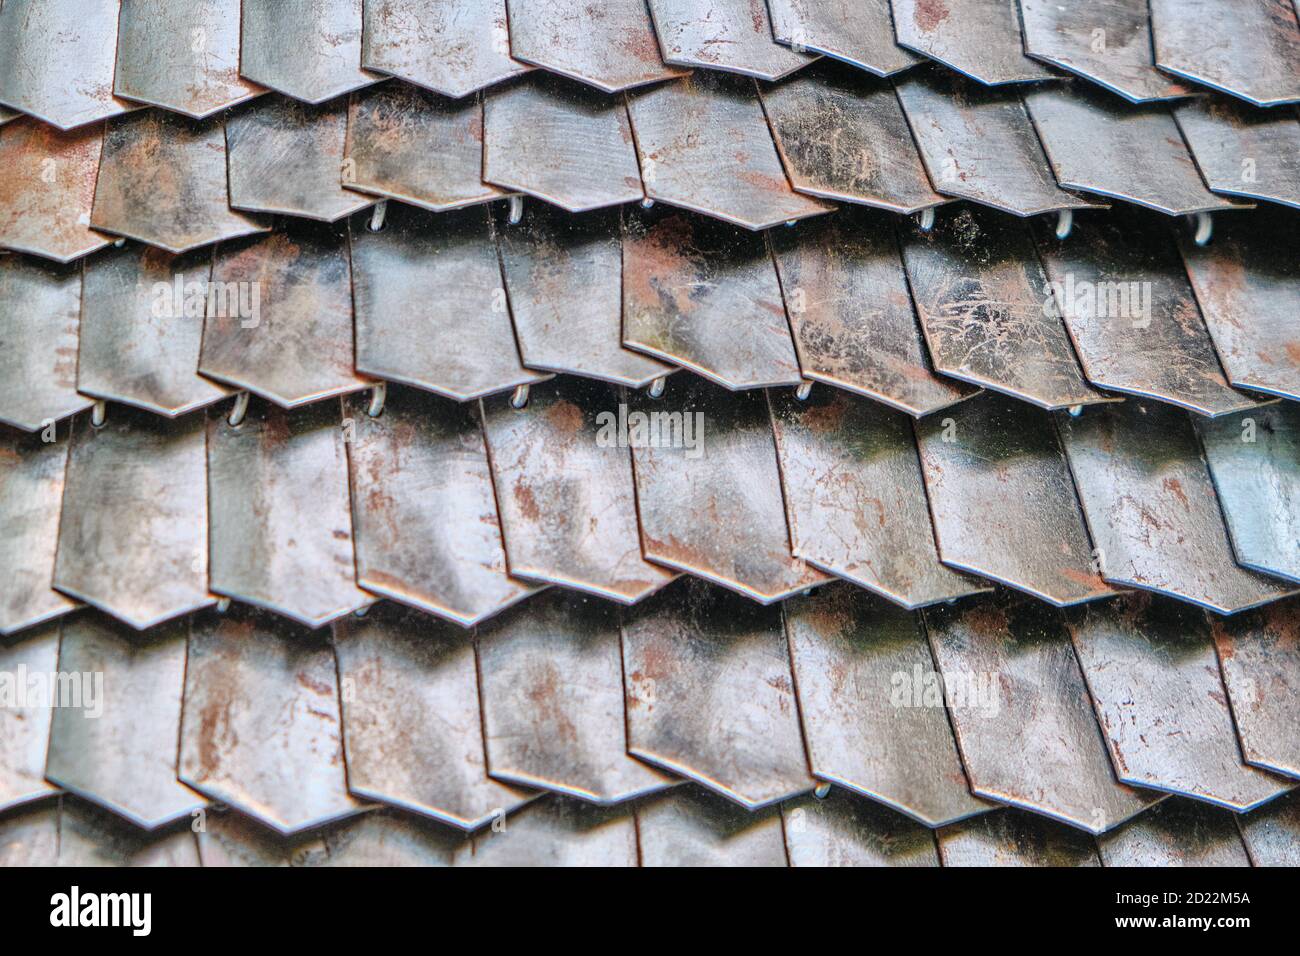 Platten der römischen Rüstung, Lorica. Textur von verrosteten Mail Rüstung aus verbundenen Platten. Hintergrund von rostigen Metallschuppen. Stockfoto